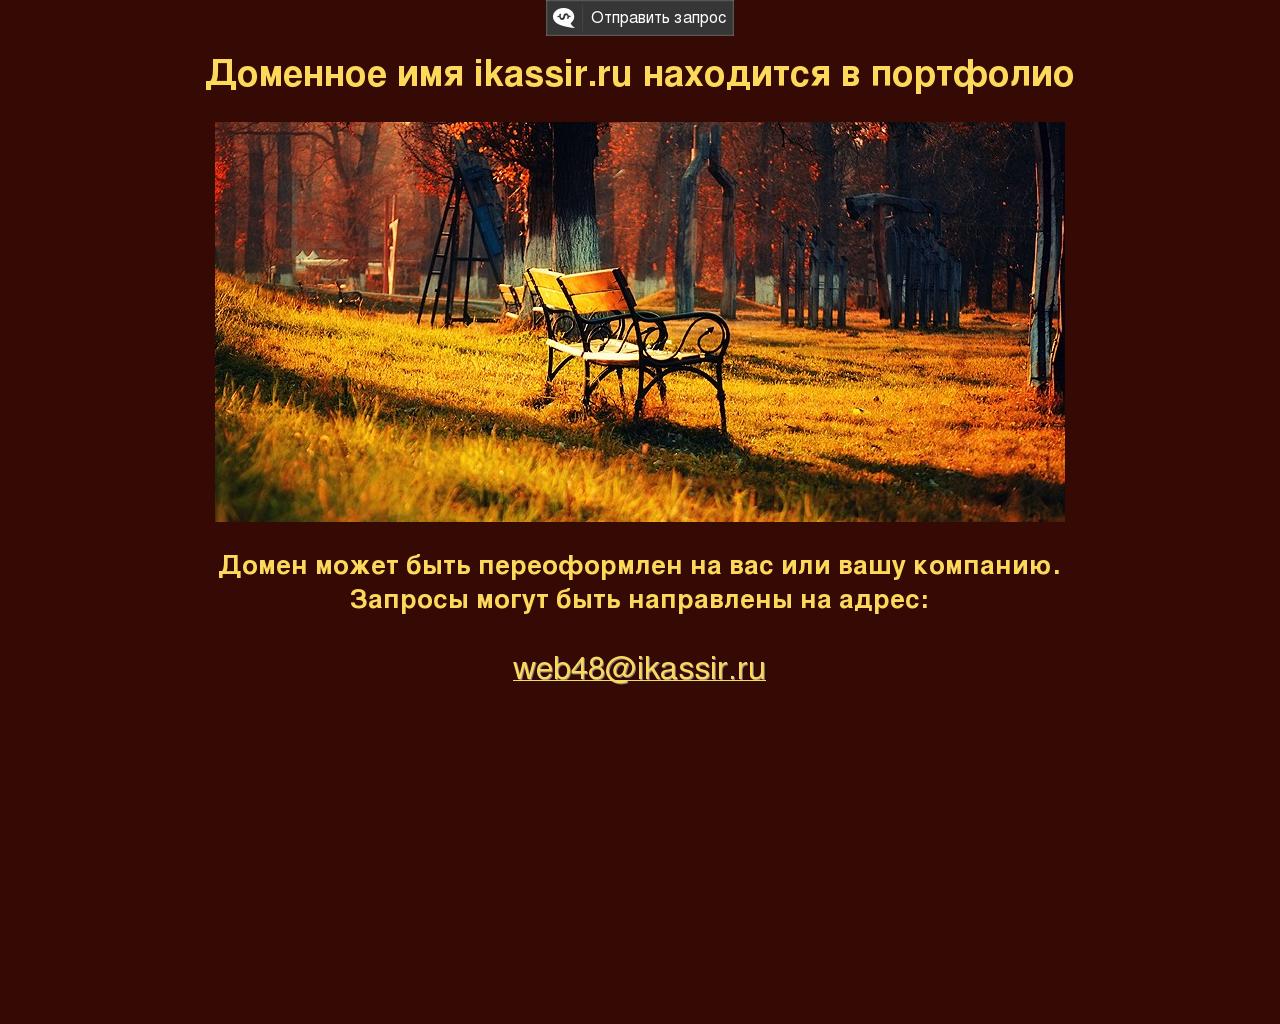 Изображение сайта ikassir.ru в разрешении 1280x1024